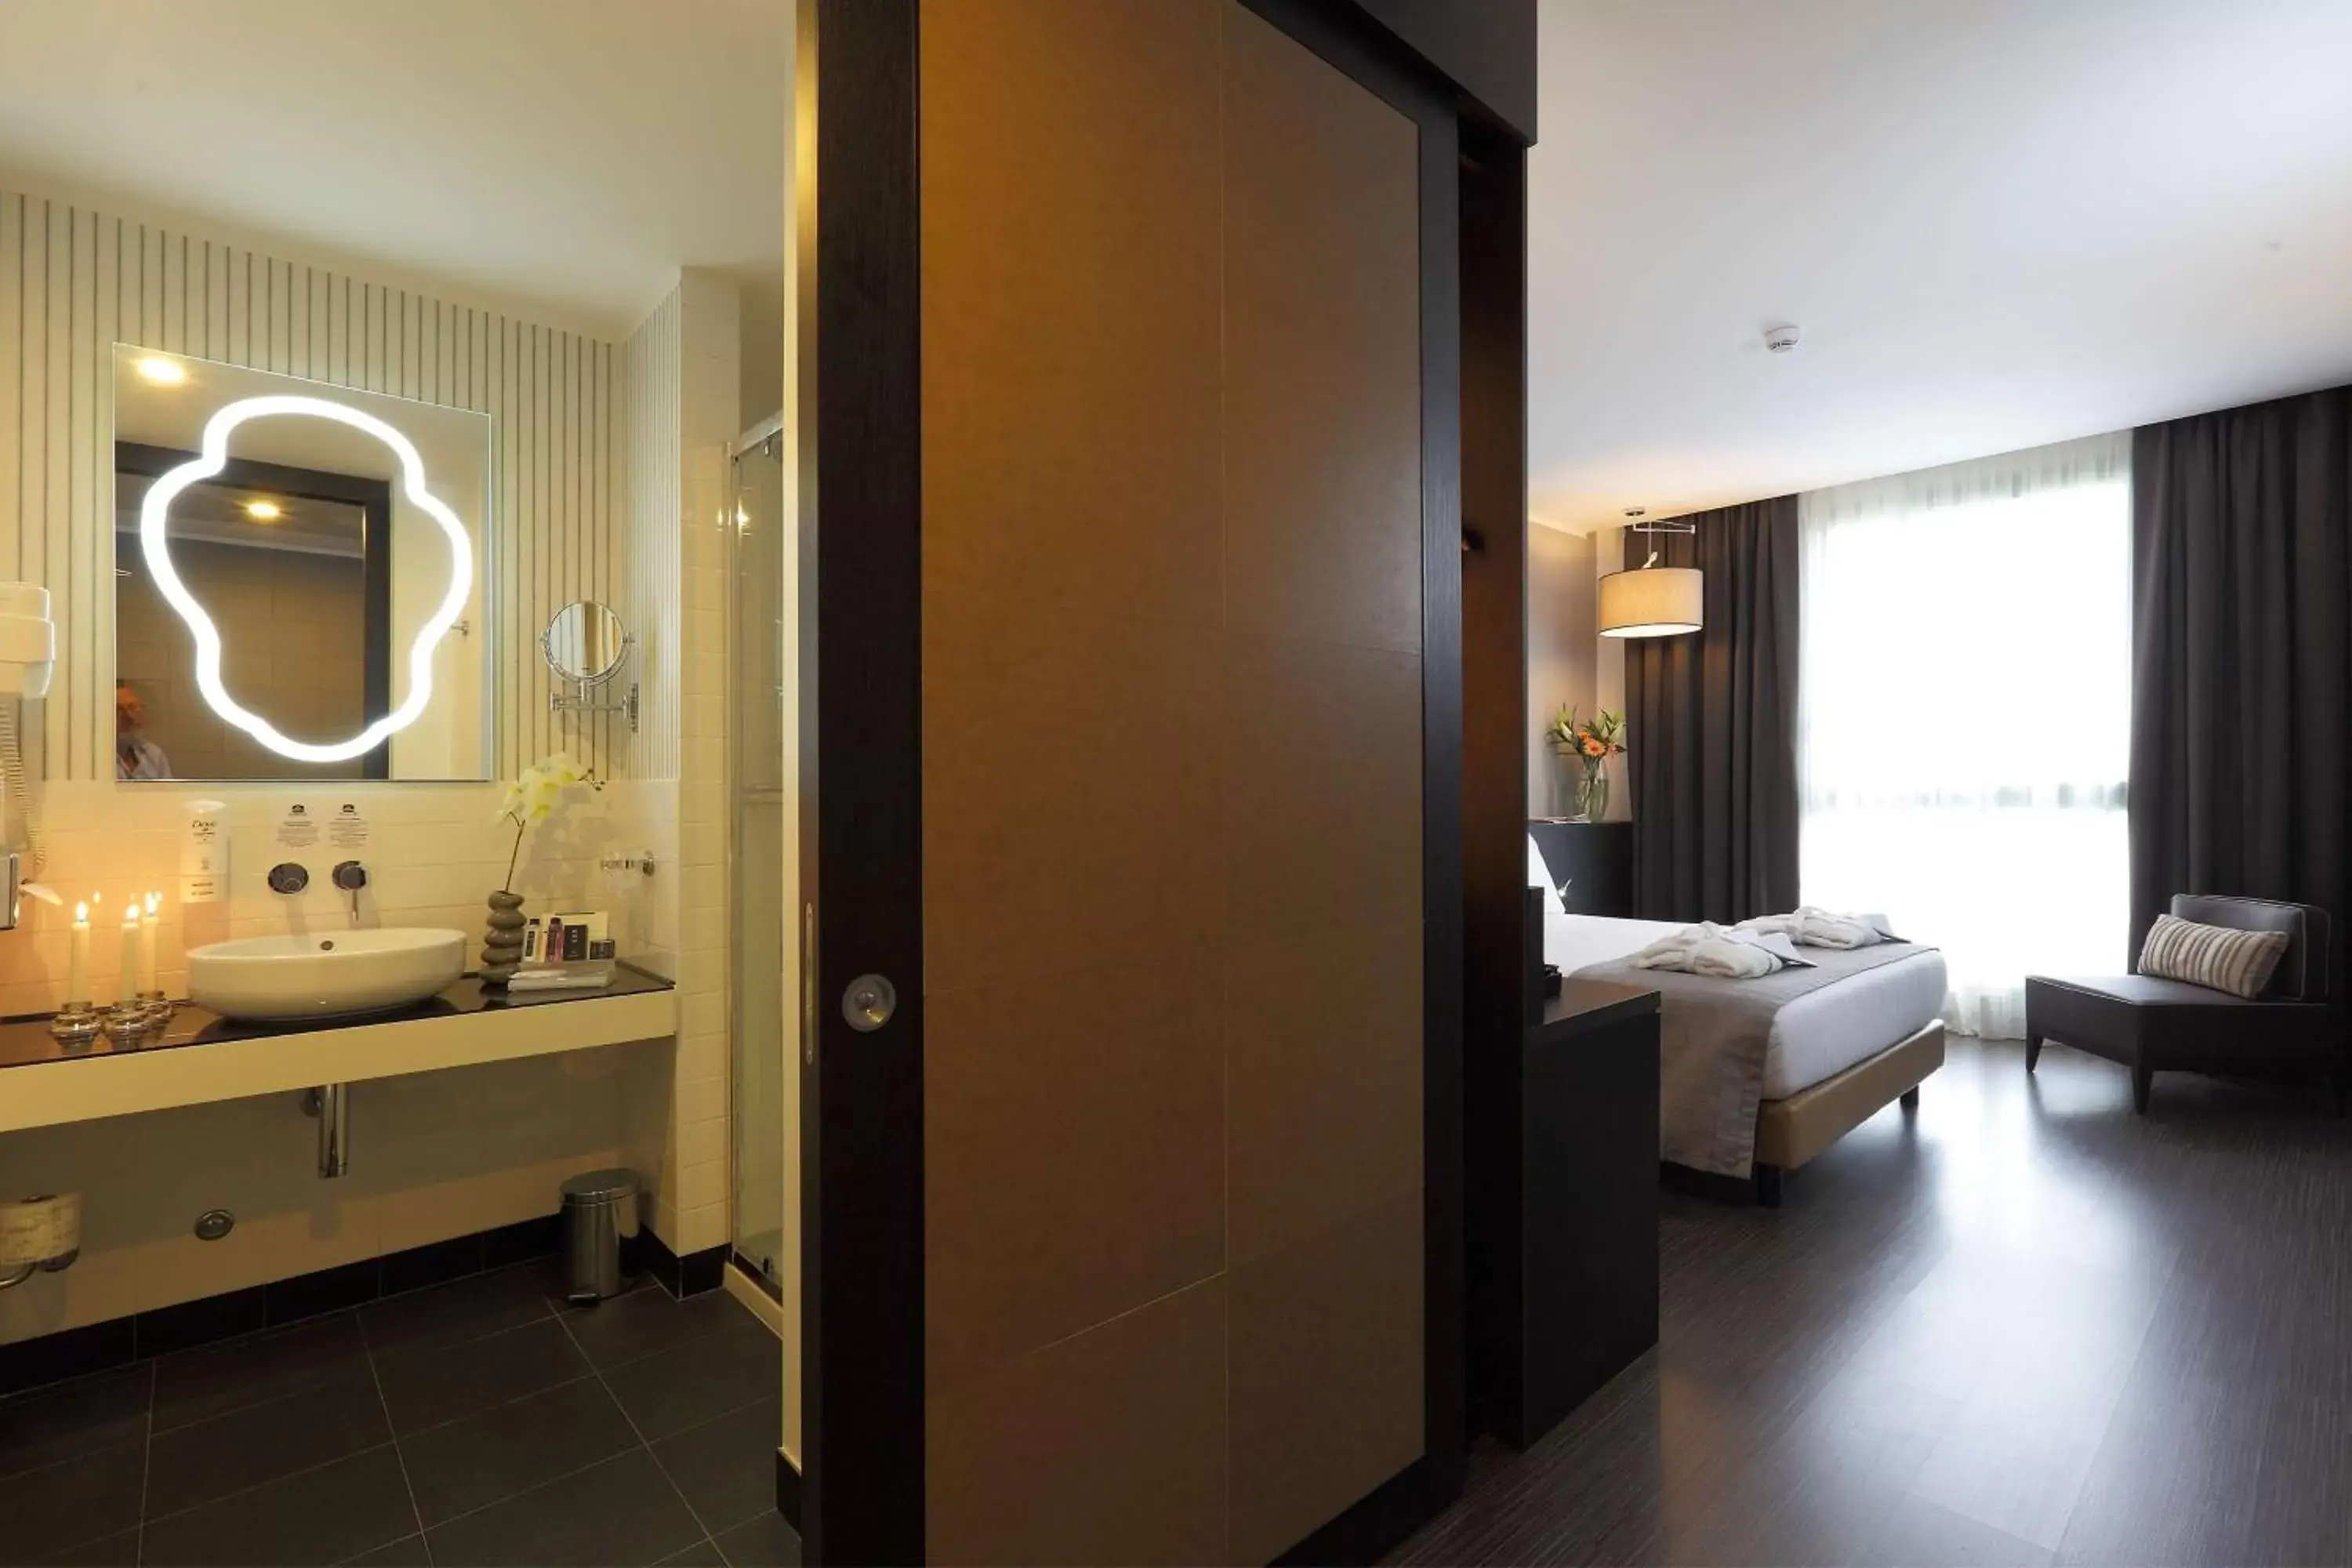 Bedroom, Bathroom in Best Western Premier CHC Airport